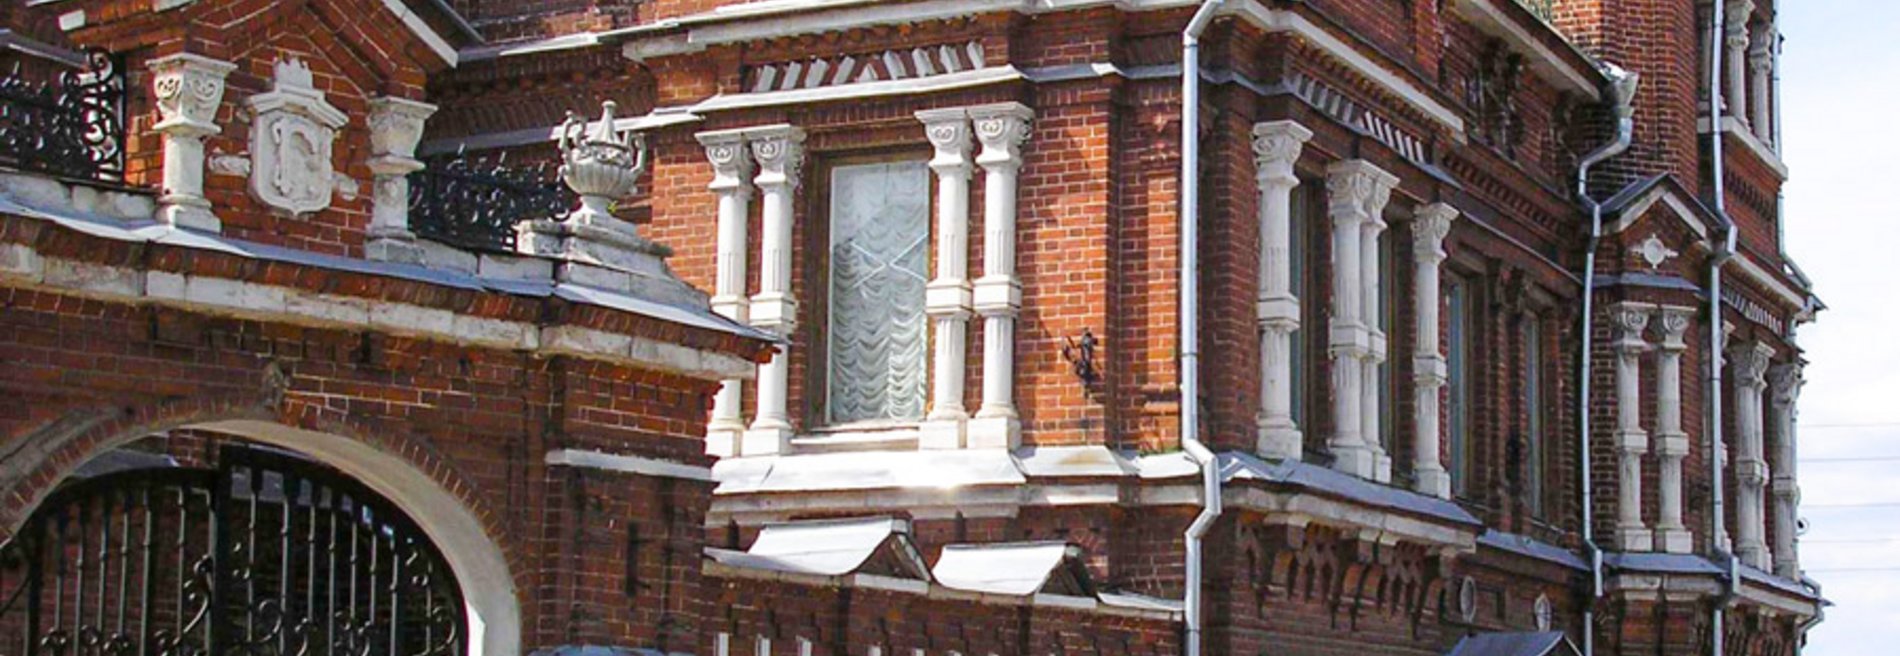 Павловский исторический музей